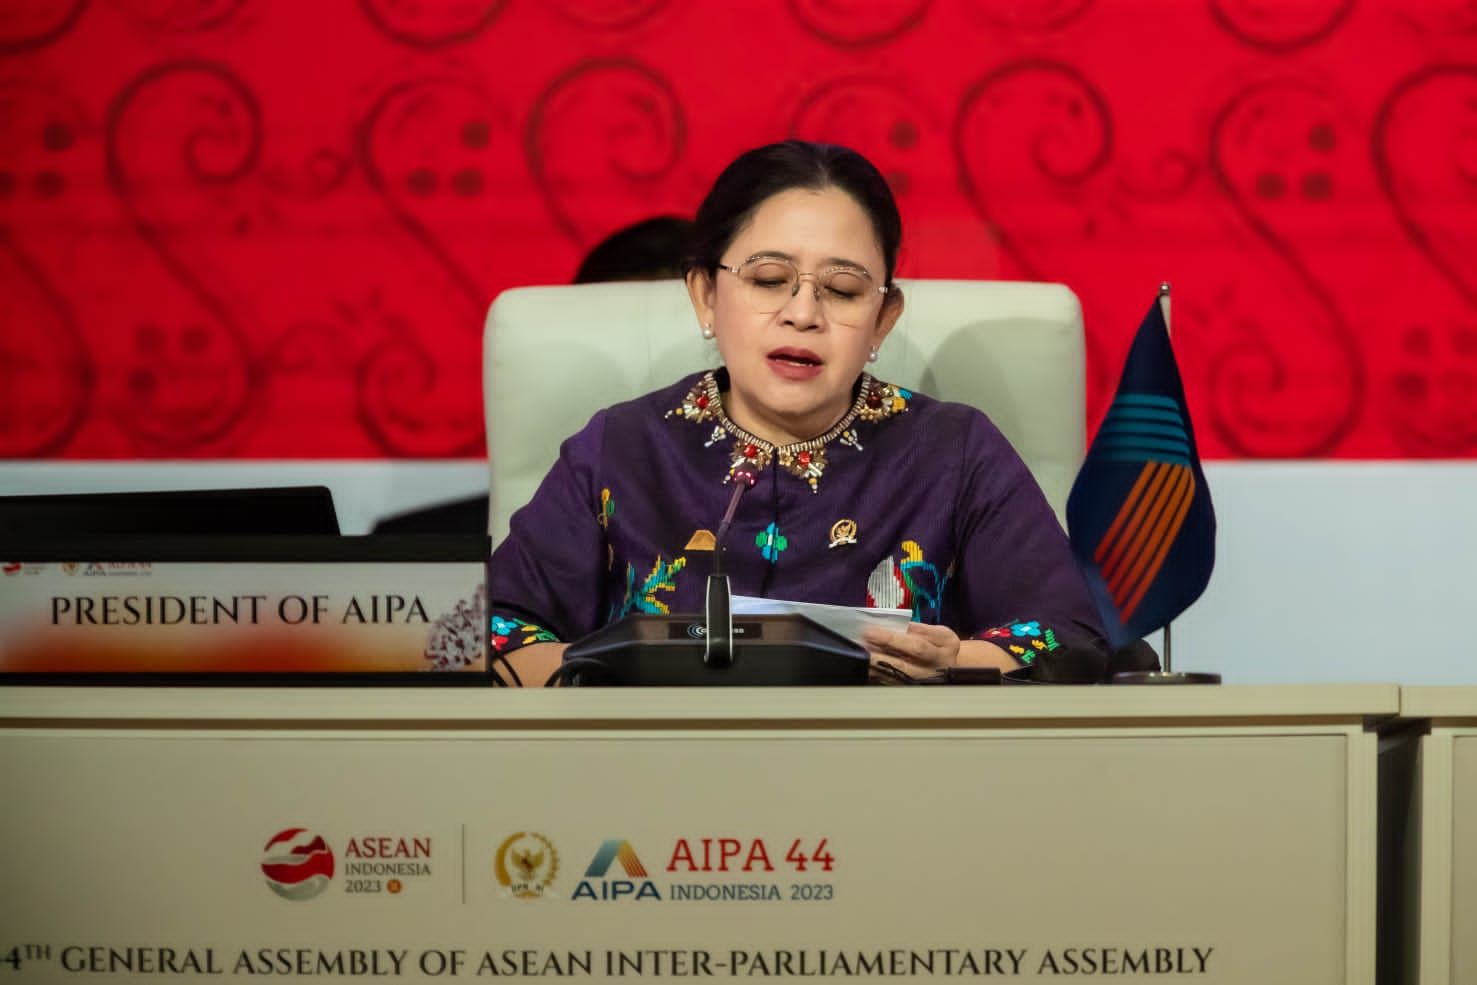 Ketua DPR RI sekaligus Presiden ASEAN Inter Parliamentary Assembly (AIPA) ke-44, Puan Maharani .